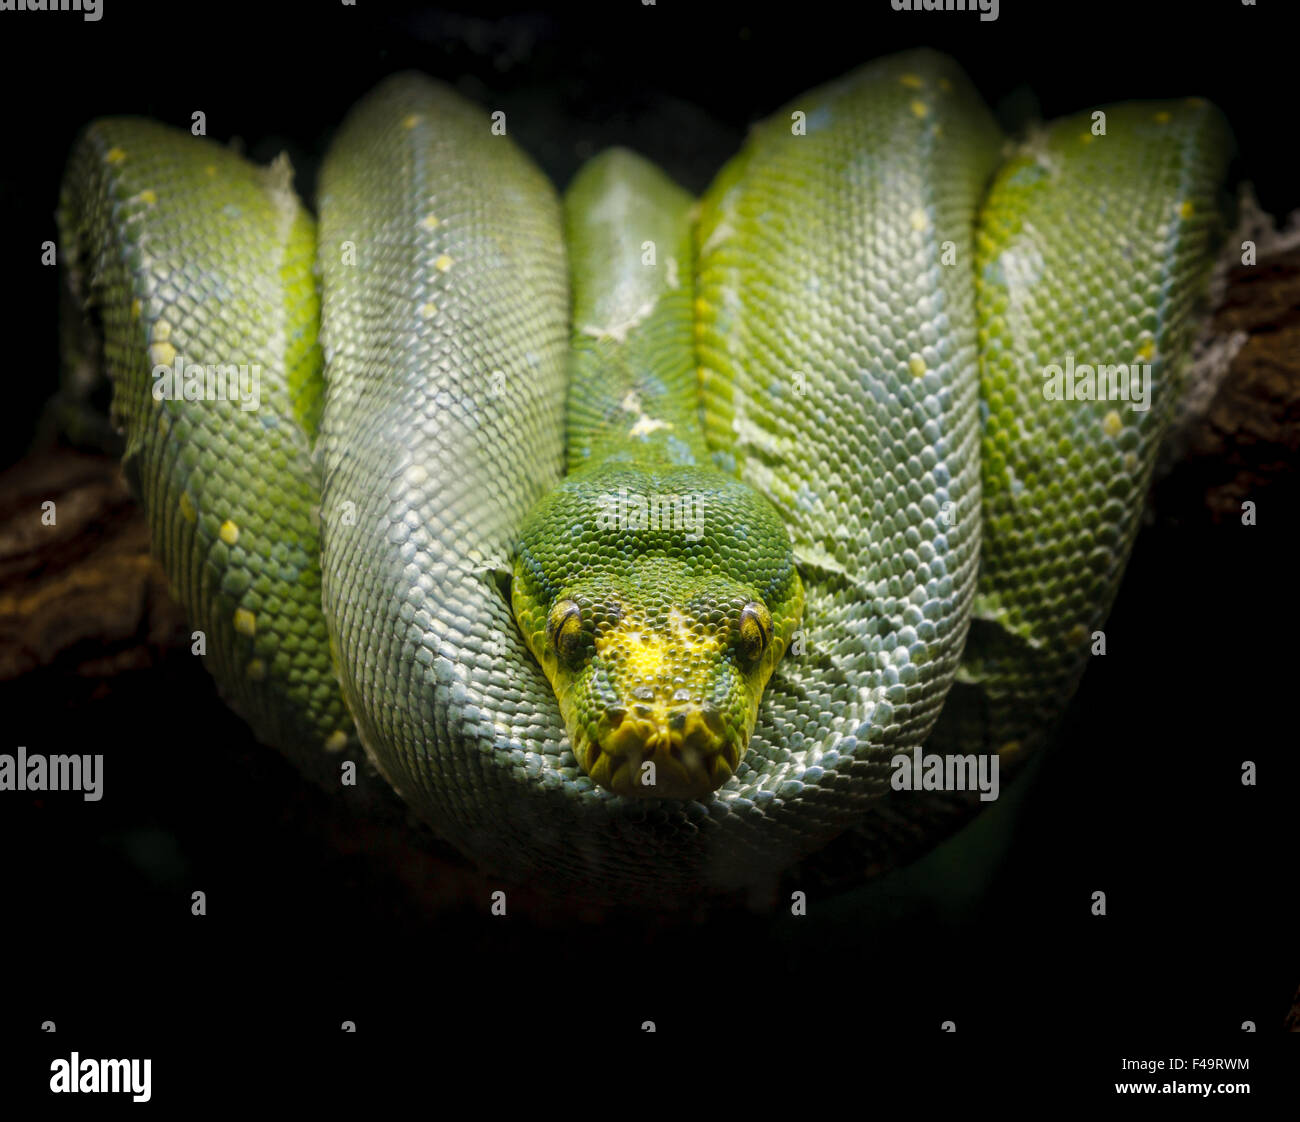 Python vert morelia viridis (confortablement) enroulé sur une branche d'arbre. Photographie d'une espèce de serpent de la famille des pythonidae. Banque D'Images